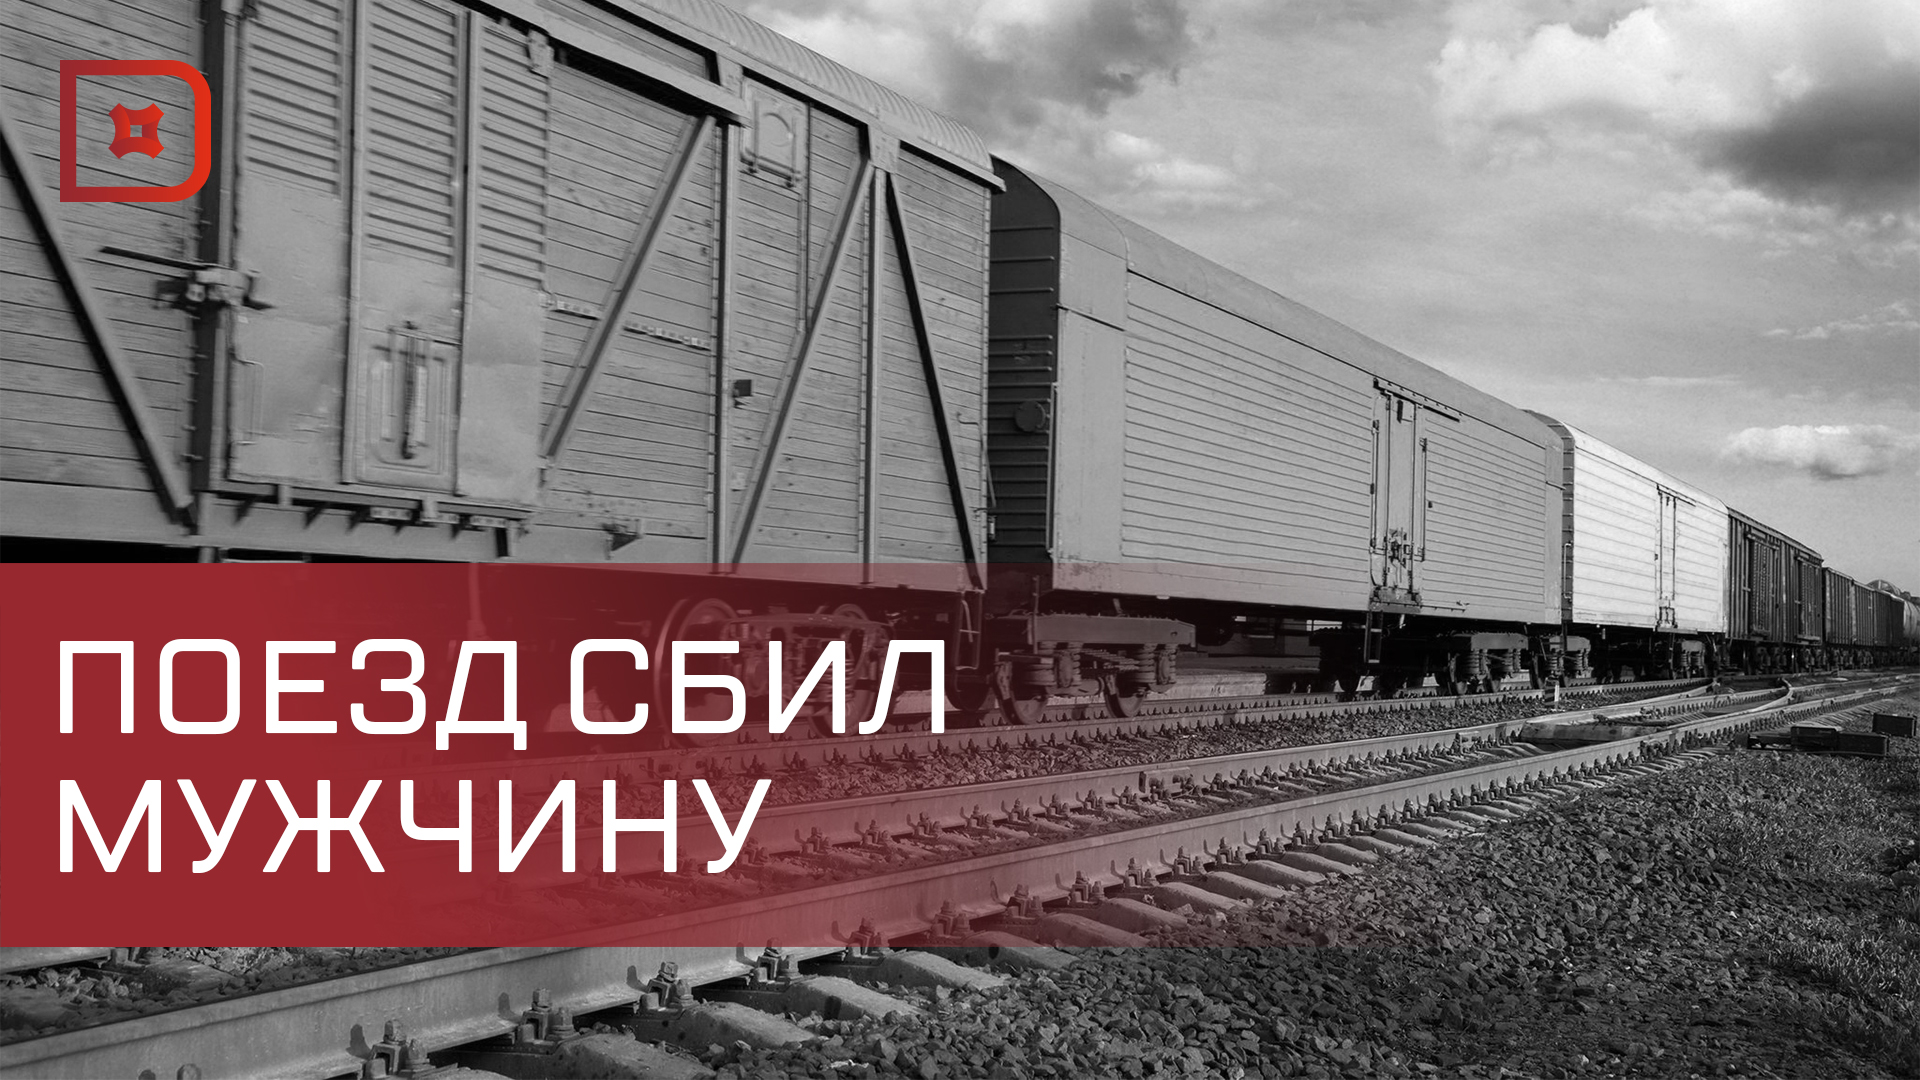 В Дагестане грузовой поезд сбил человека